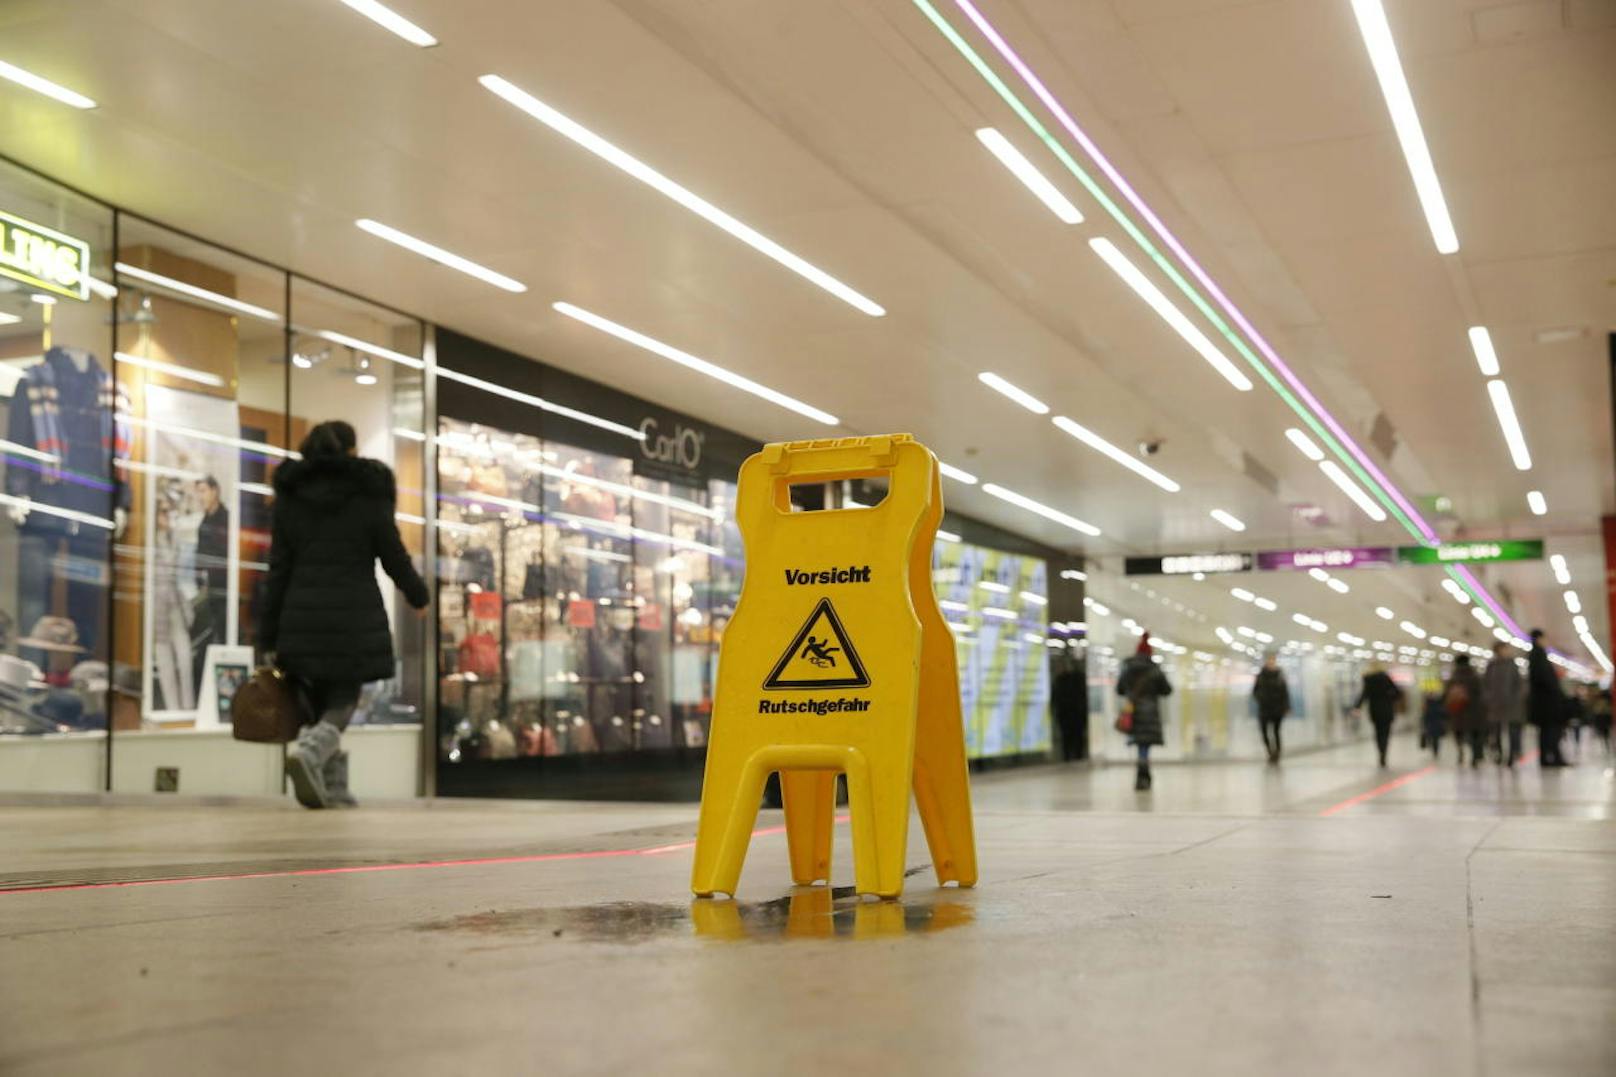 In der Station Karlsplatz tropft es von der Decke, Warnschilder weisen auf die Rutschgefahr hin.